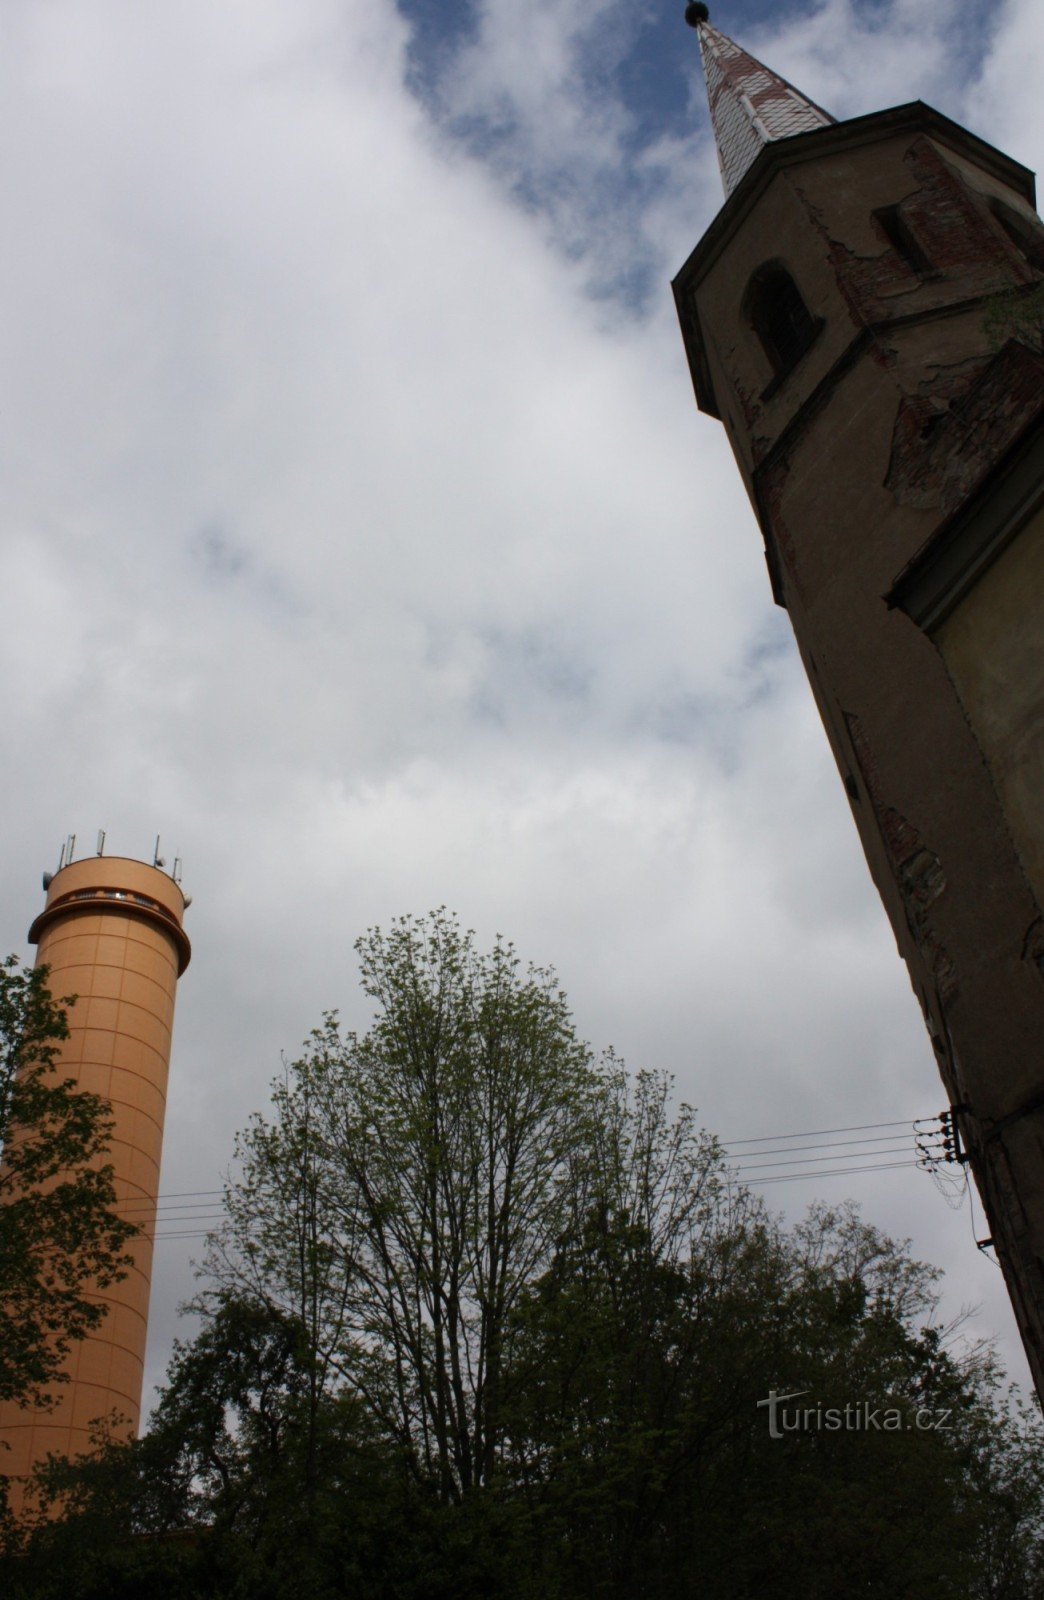 Дві визначні пам'ятки поселення Прачов - костел і водонапірна вежа